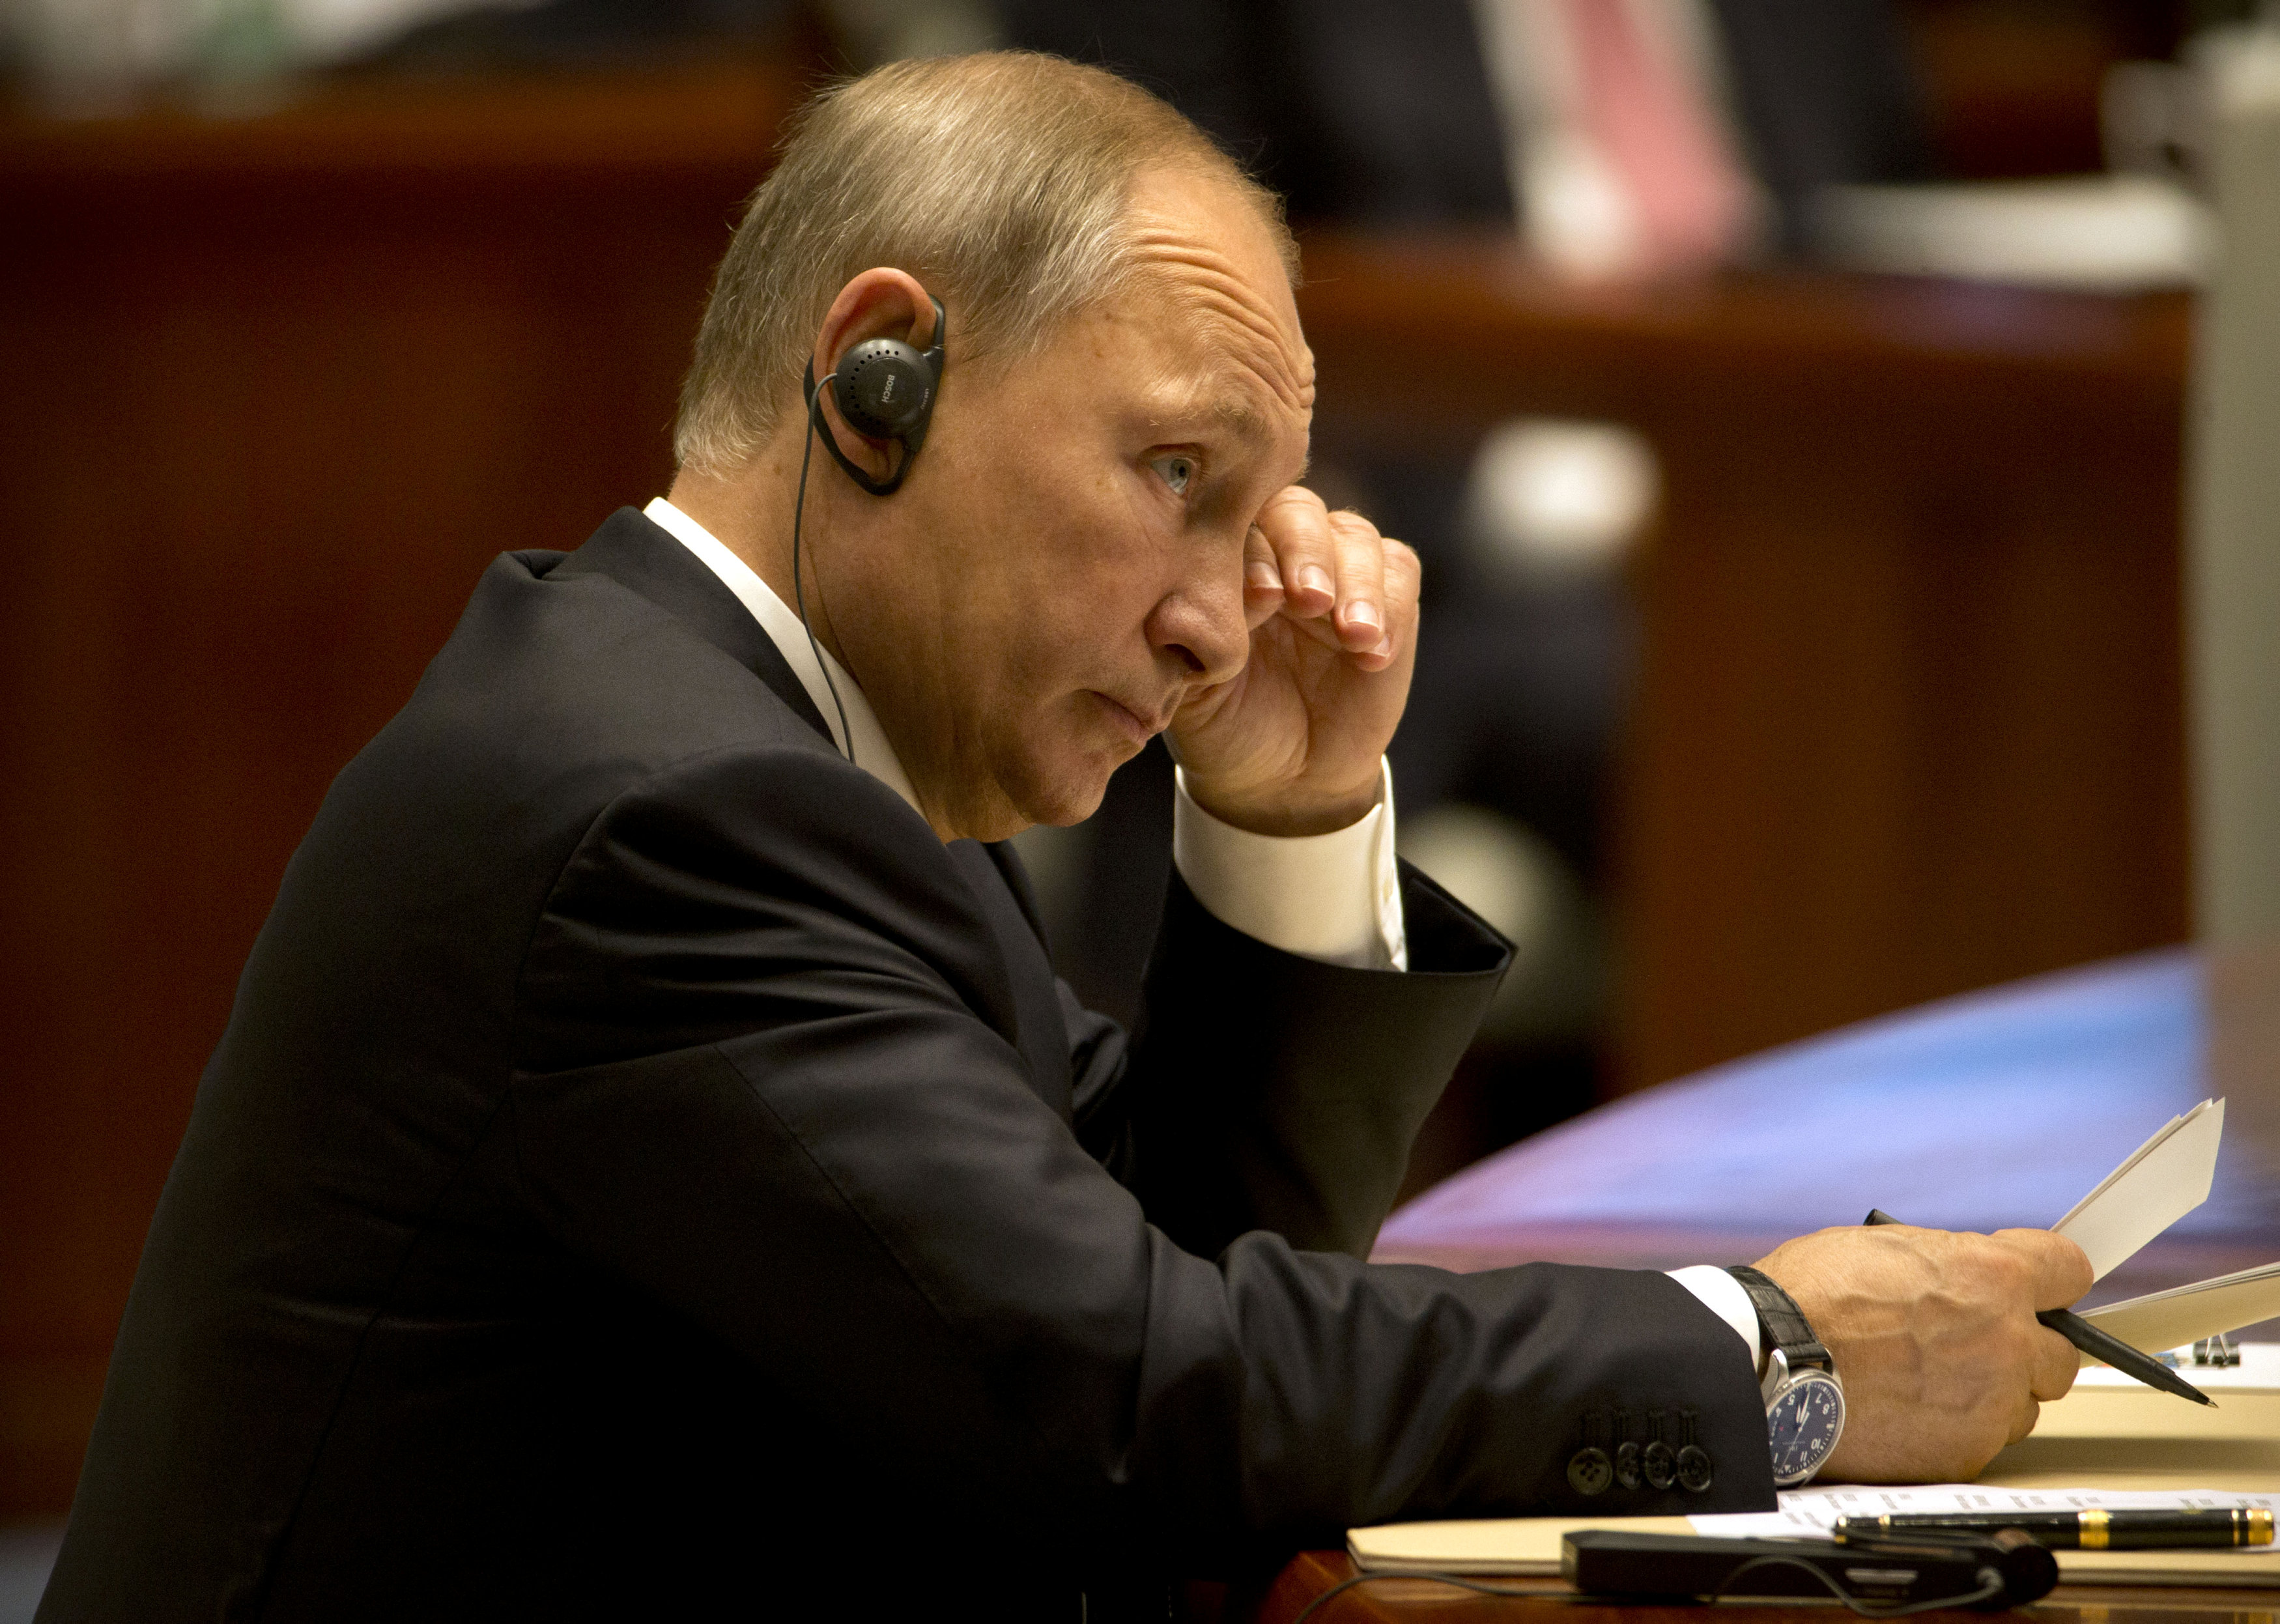 Η Μόσχα ίσως ζητήσει μείωση του διπλωματικού προσωπικού των ΗΠΑ